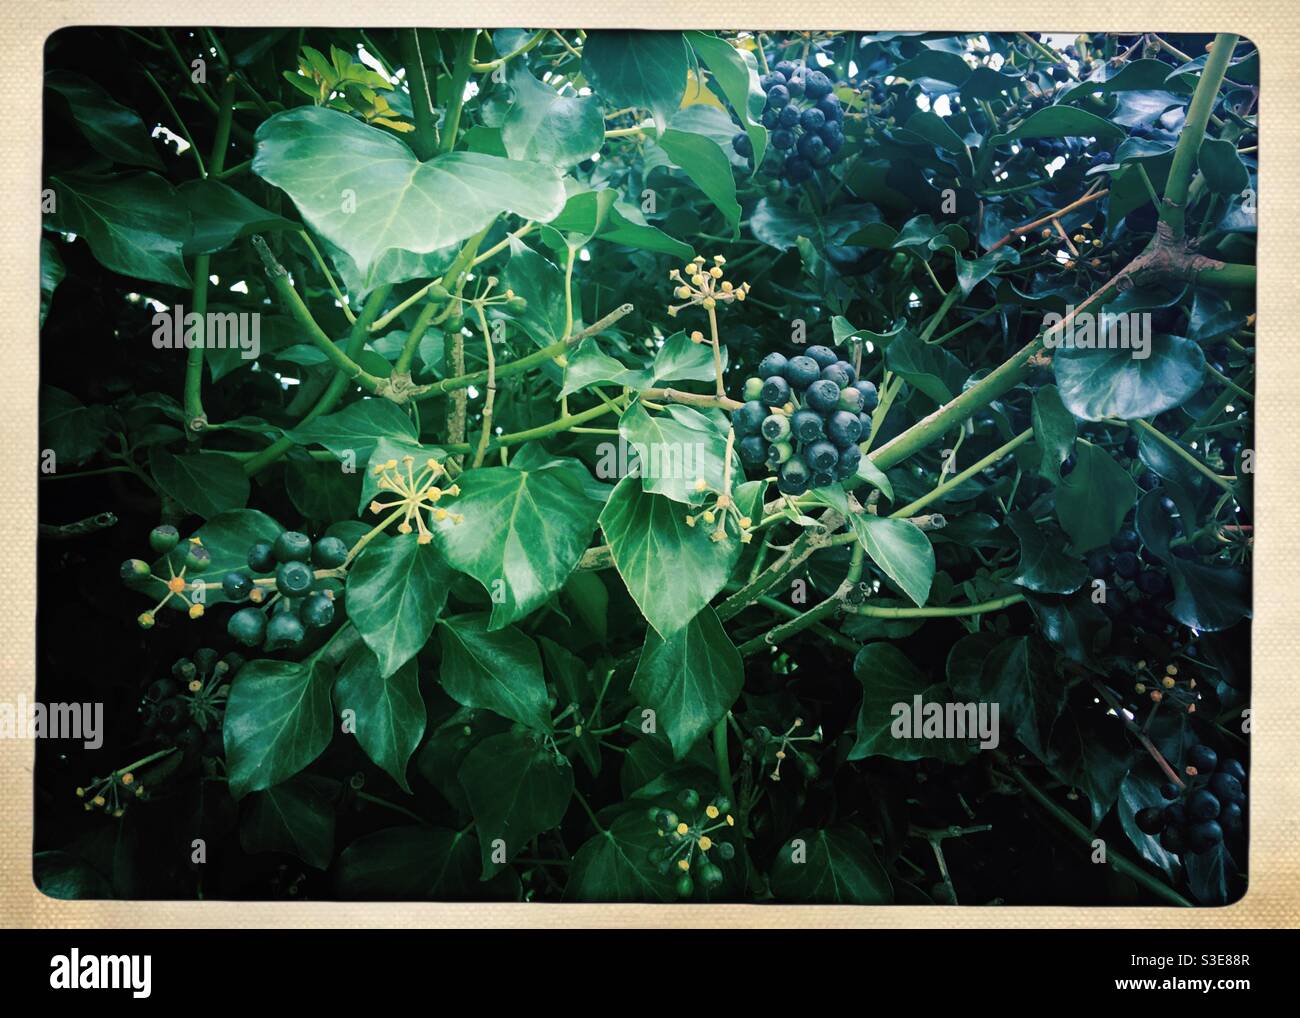 Efeu-Pflanze mit Beeren und dunkelgrünen Blättern Stockfoto